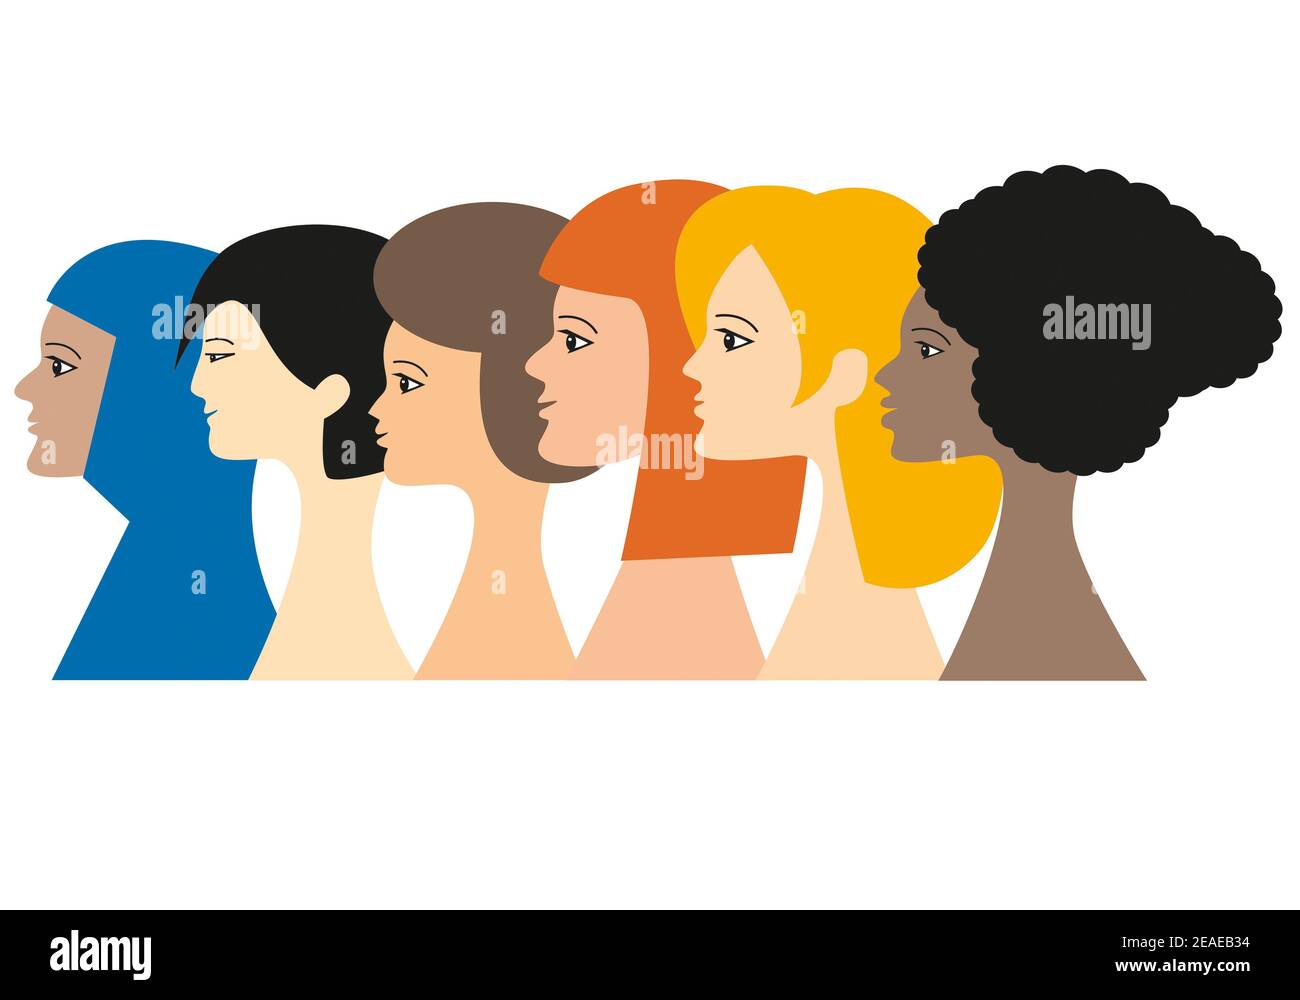 Ritratti di un gruppo di 6 donne che rappresentano i continenti del mondo. Concetto di diversità multietnica. Immagine isolata su sfondo bianco. Foto Stock